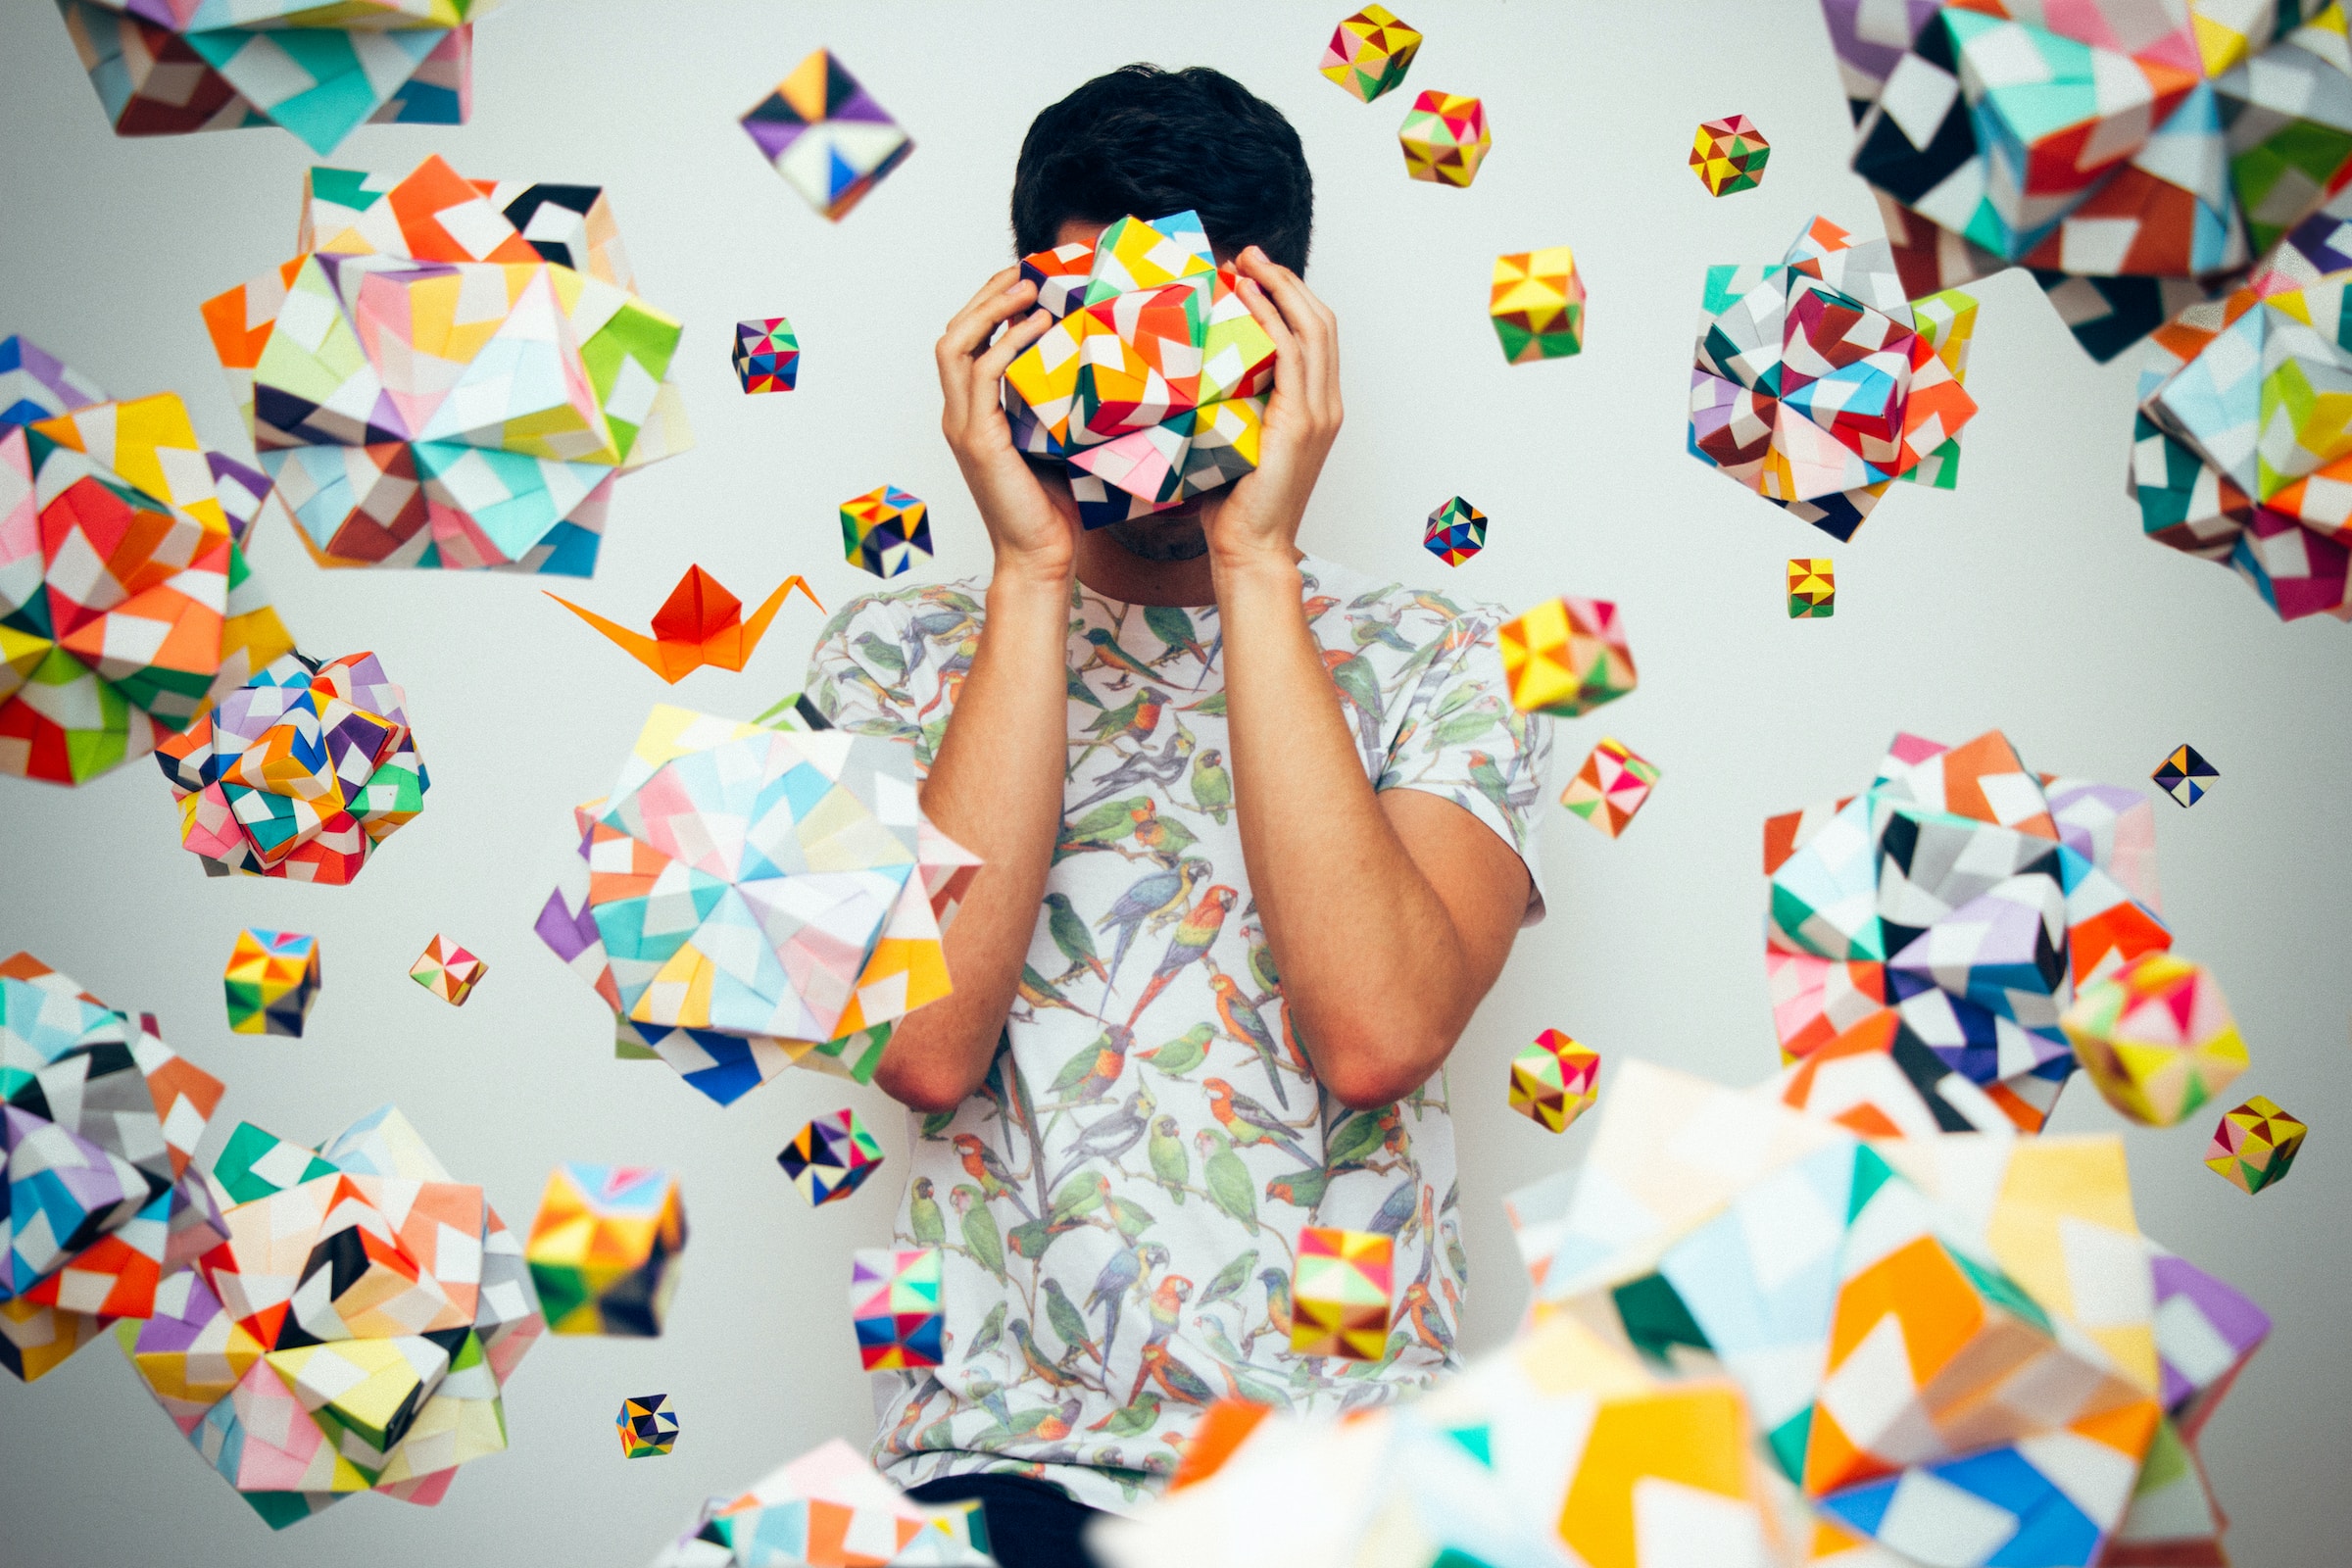 На сером фоне изображено множество разноцветных кубиков. В центре изображен мужчина, стоящий и закрывающий глаза руками разноцветной фигурой, похожей на куб.